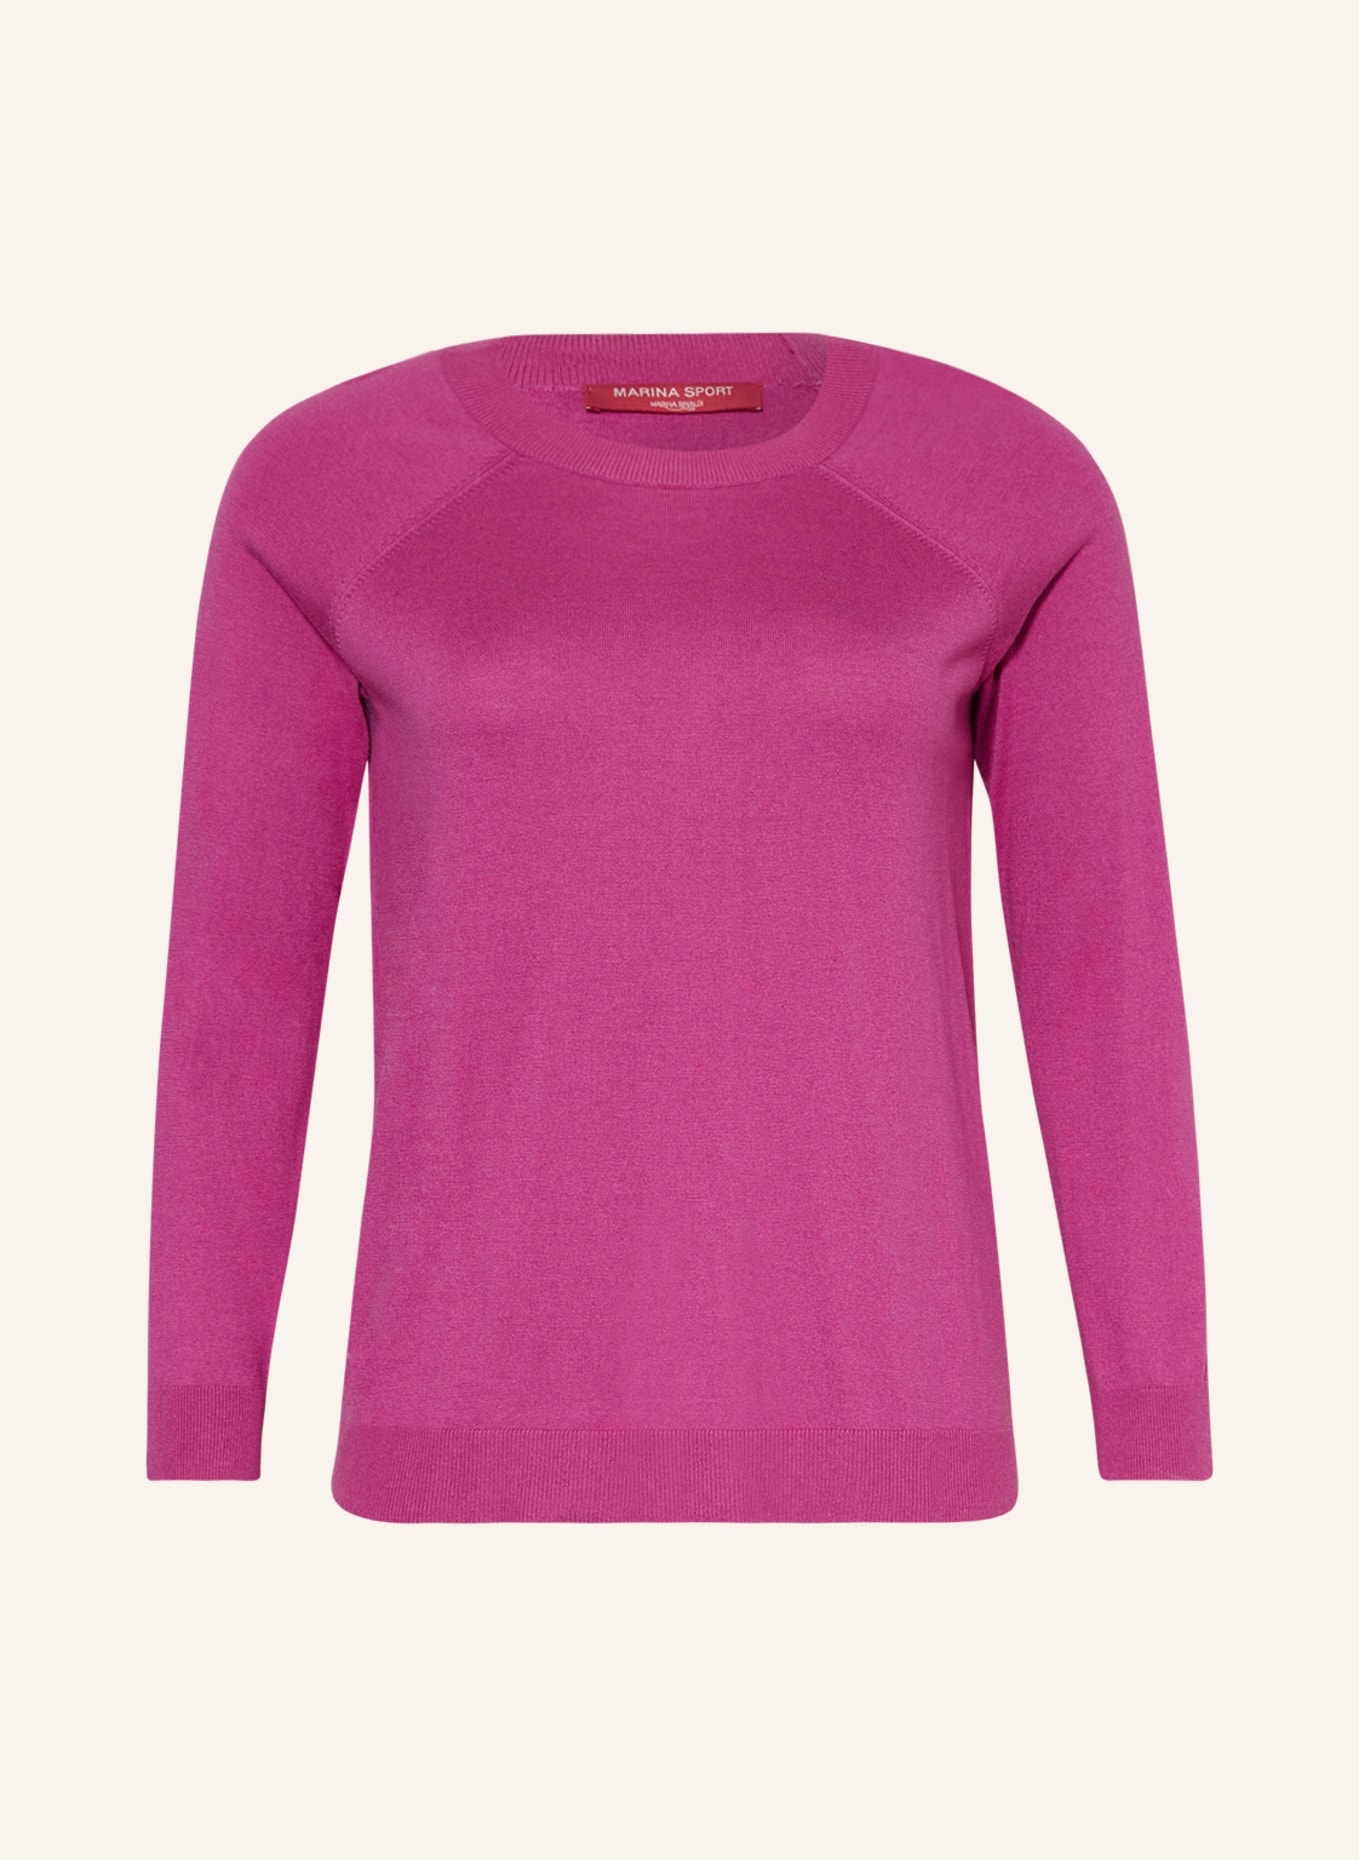 MARINA RINALDI SPORT Sweater AGRUME, Color: FUCHSIA (Image 1)